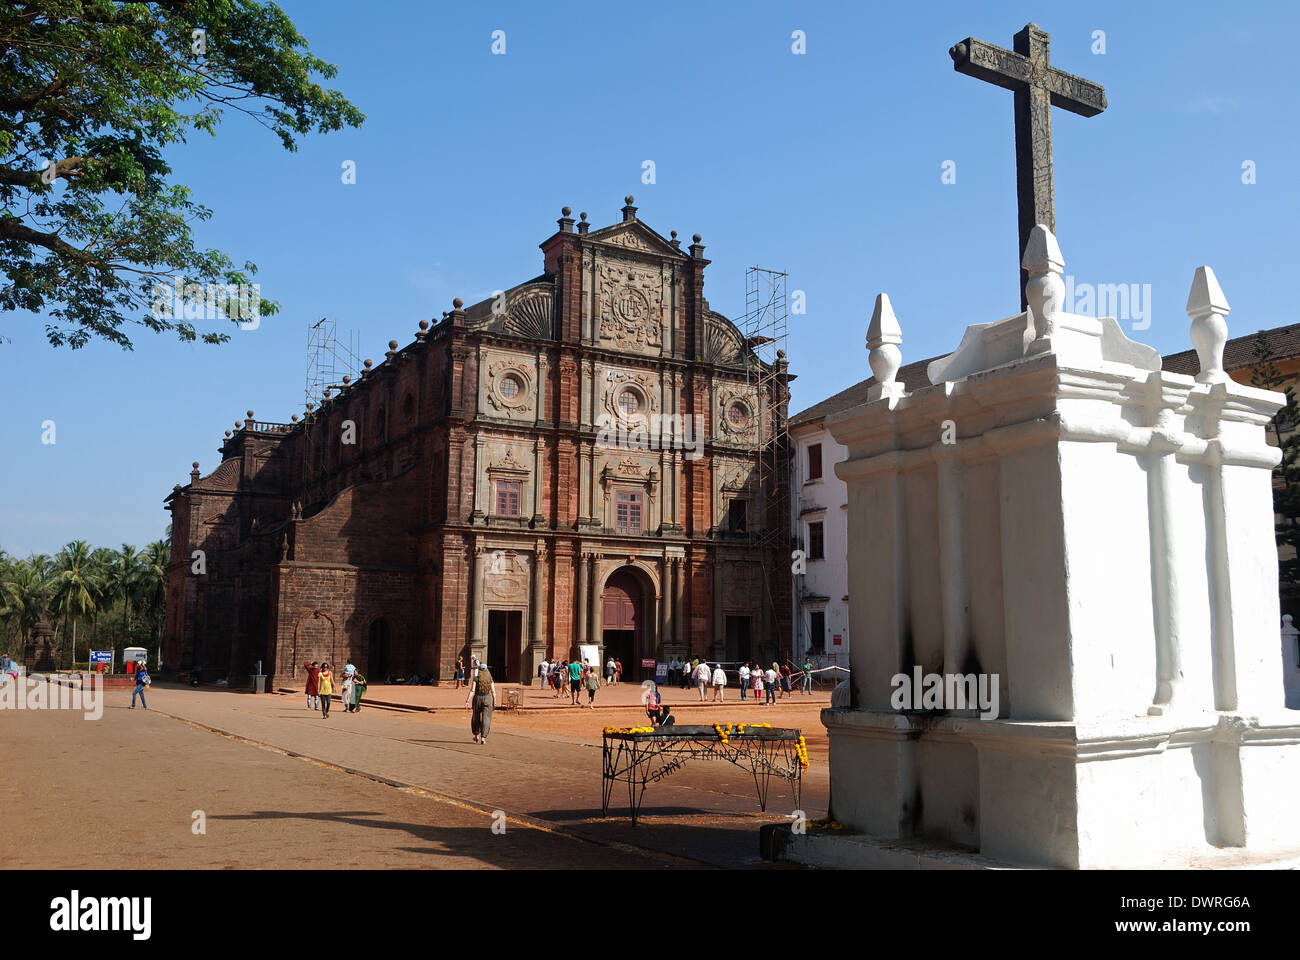 Basilica del Bom Jesus Chiesa di Goa, India.Questo è un sito patrimonio mondiale dell'UNESCO. Foto Stock